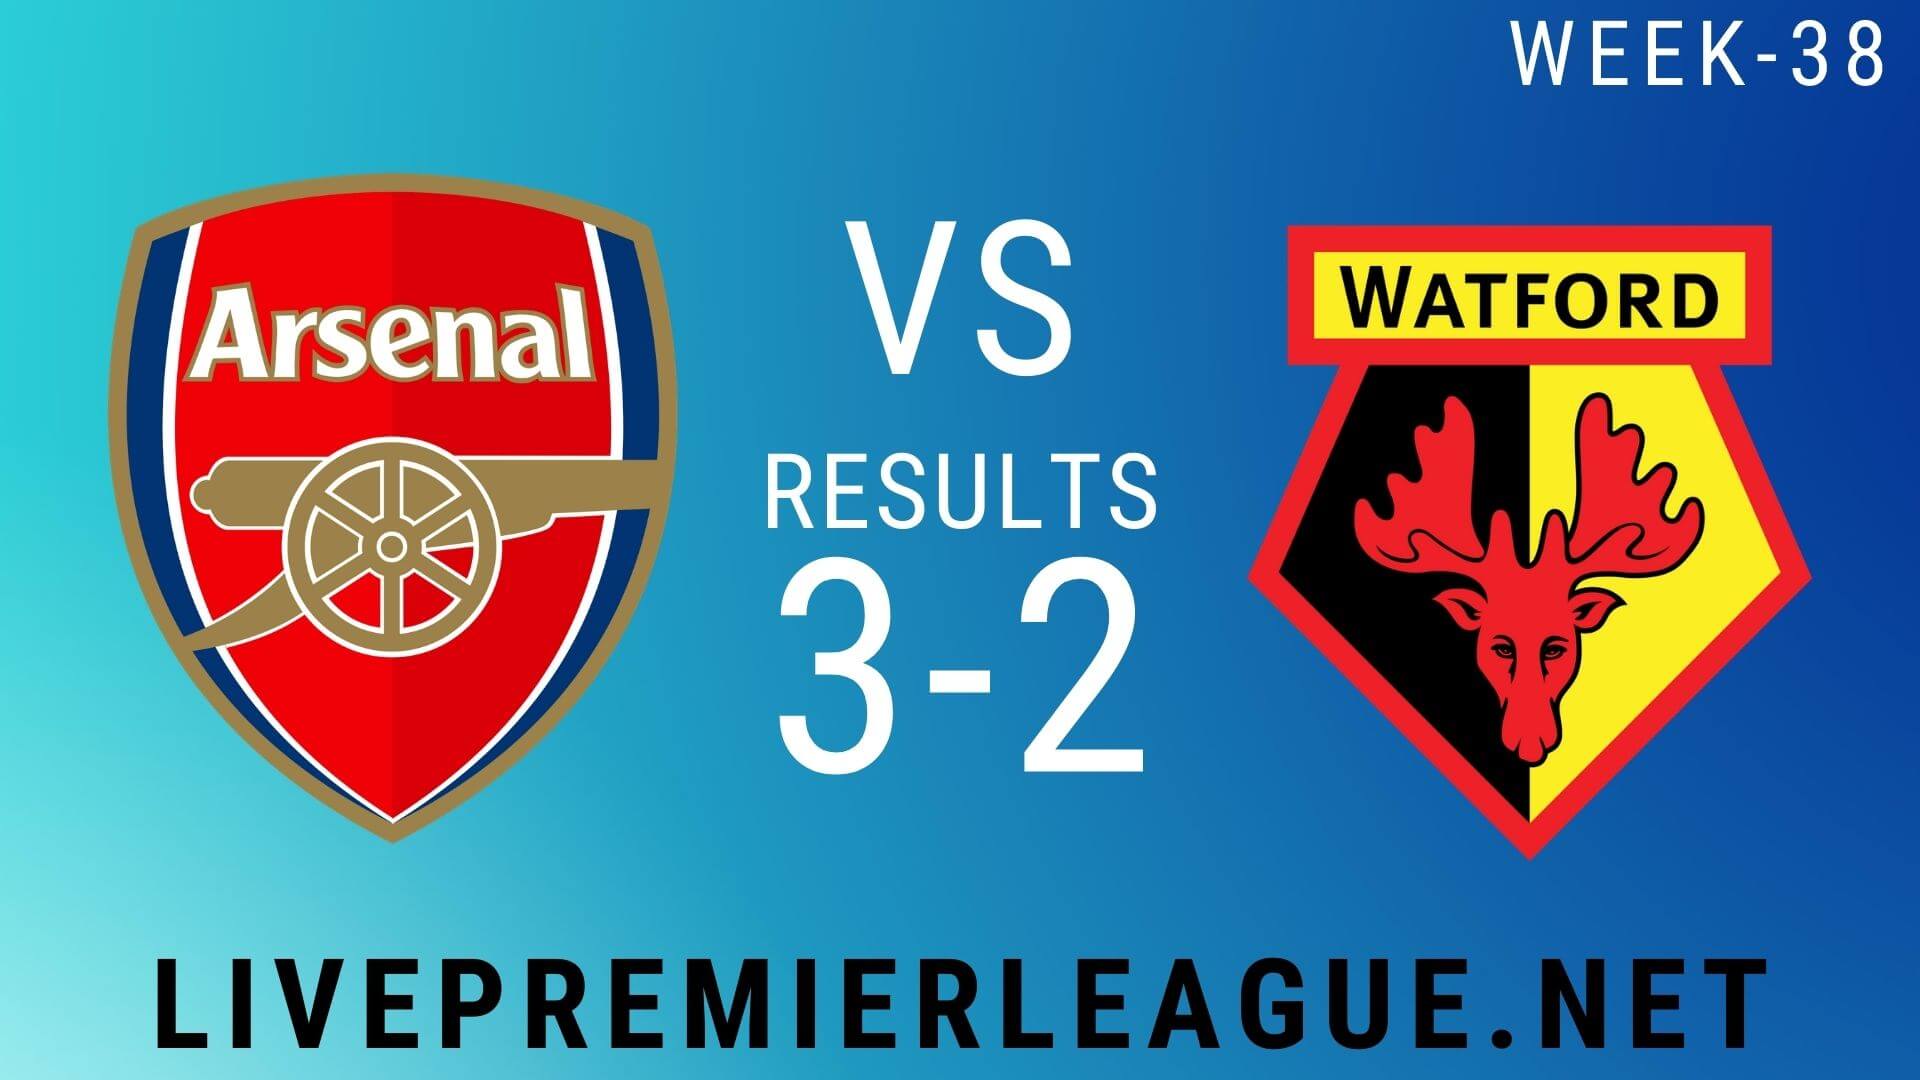 Arsenal Vs Watford | Week 38 Result 2020